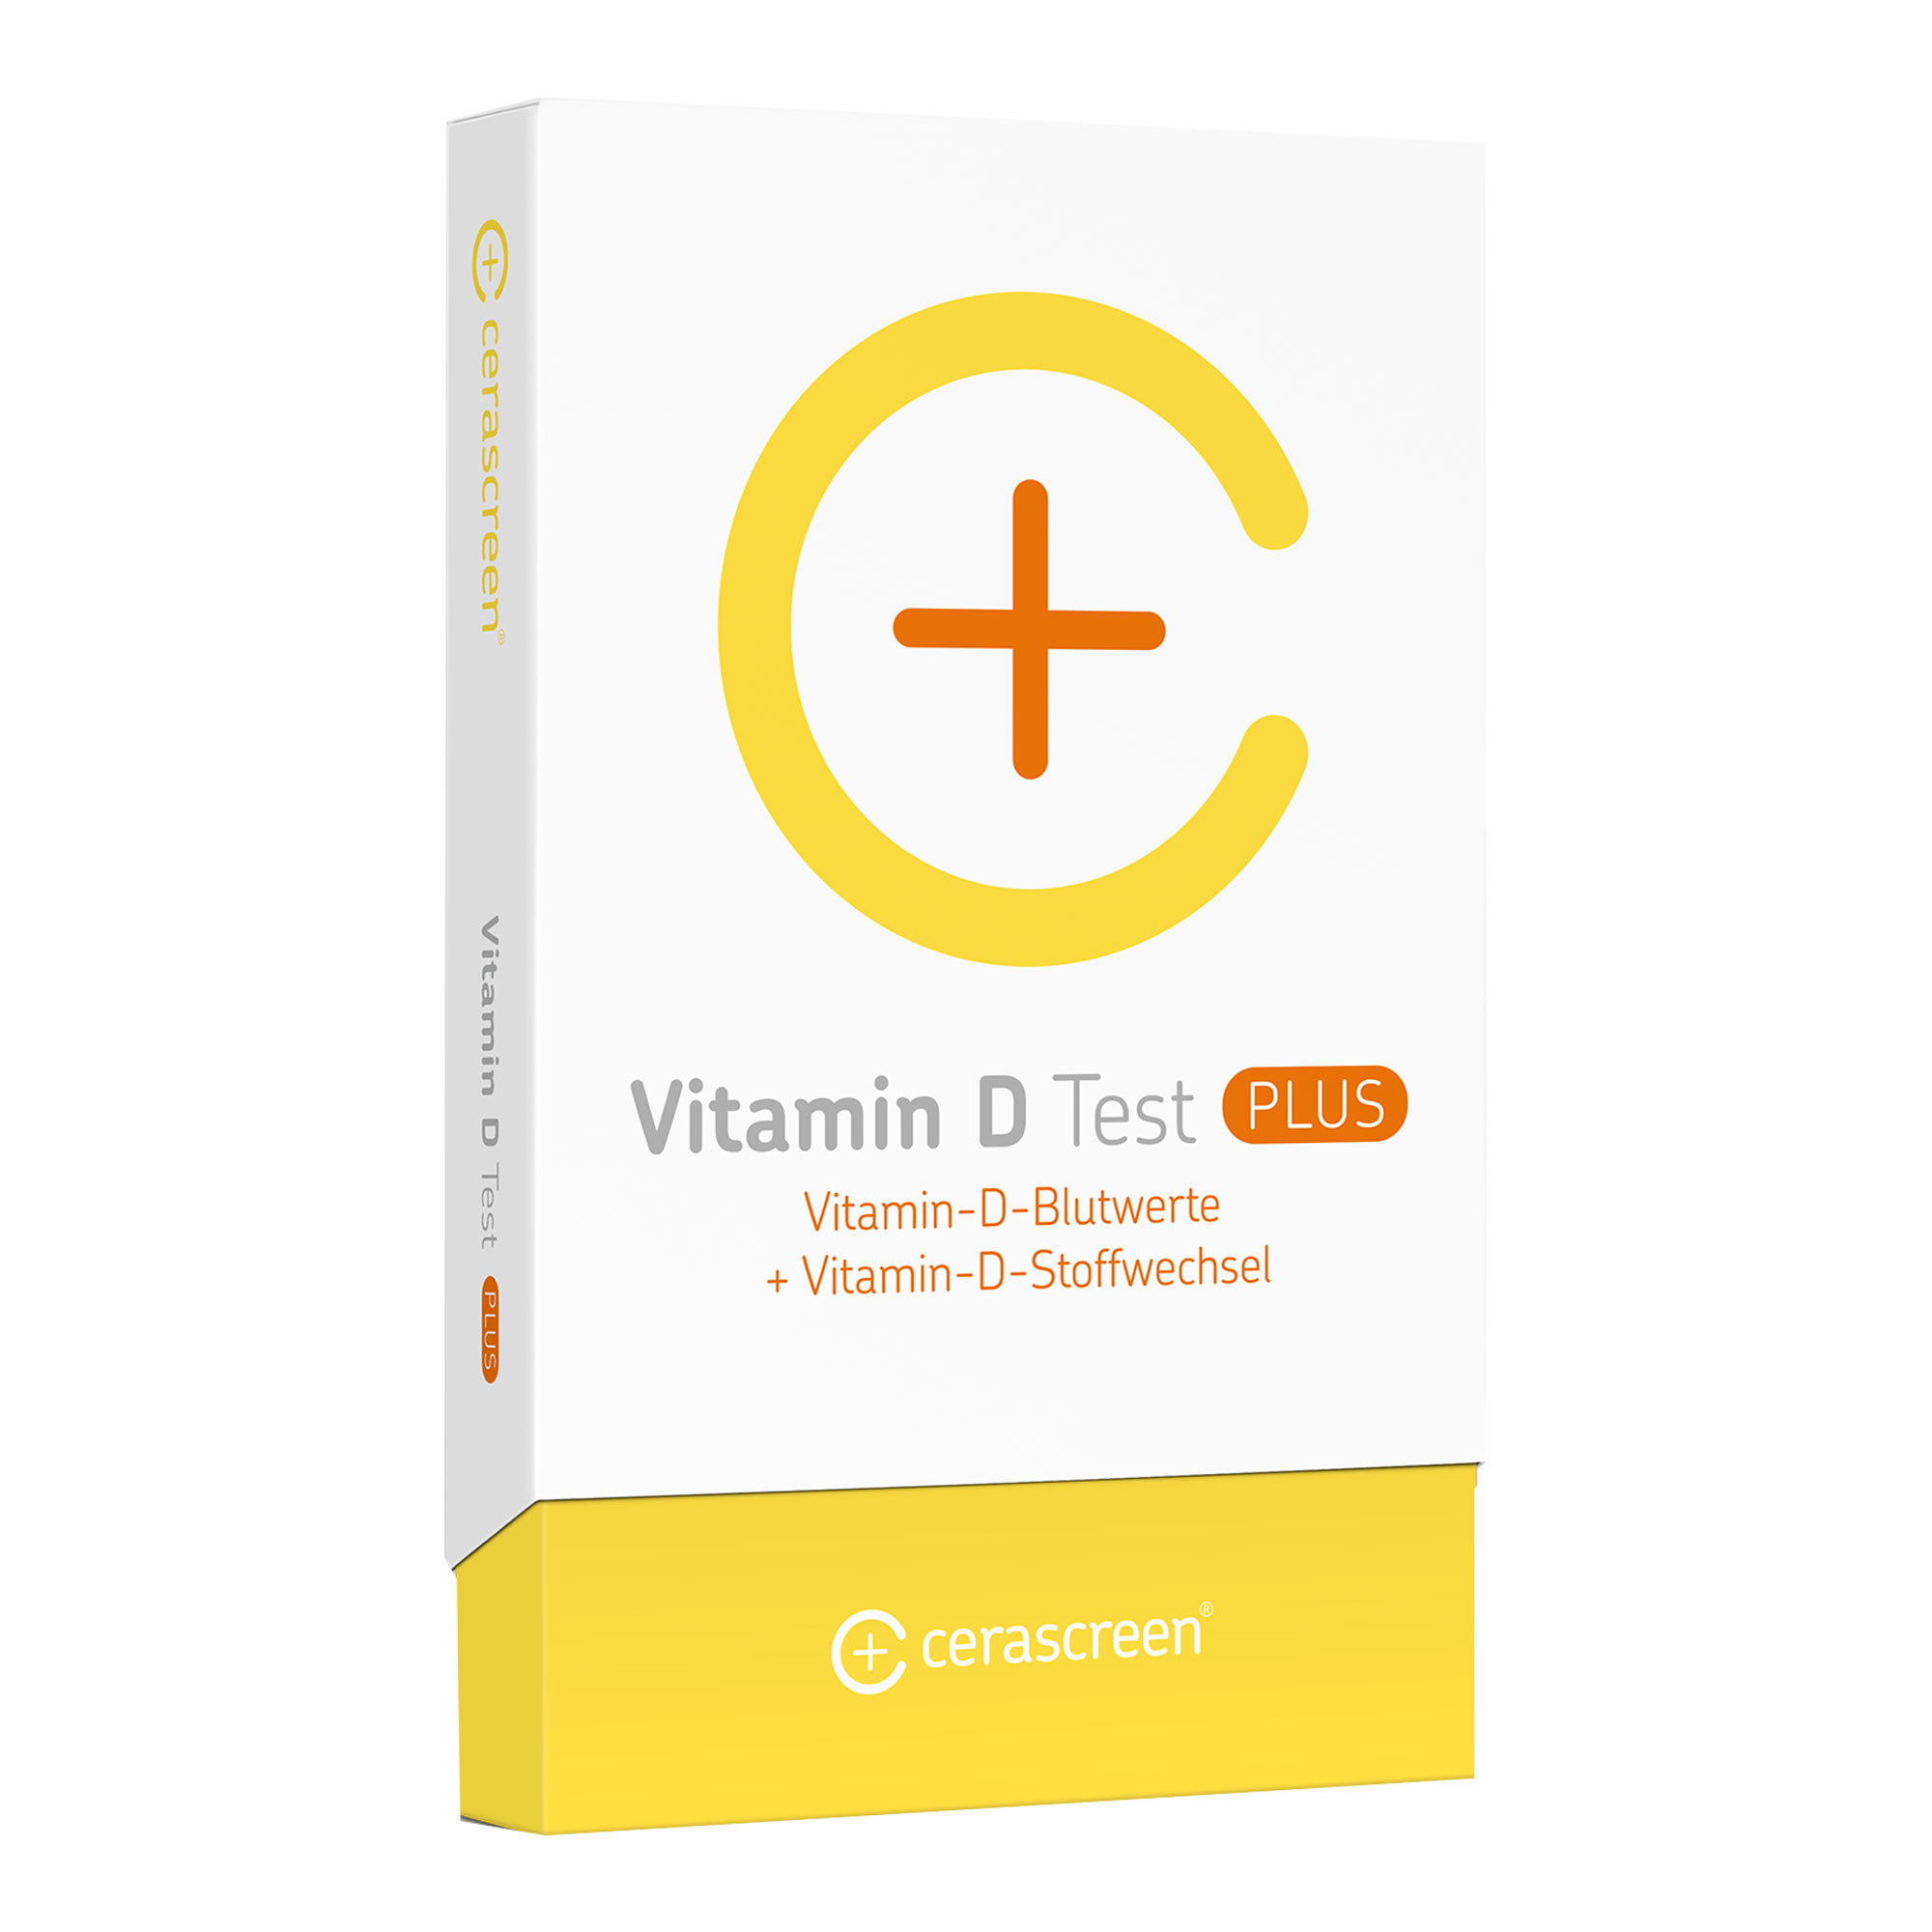 Testkit zur Messung der Vitamin-D-Blutwerte und Vitamin-D-Stoffwechsel.